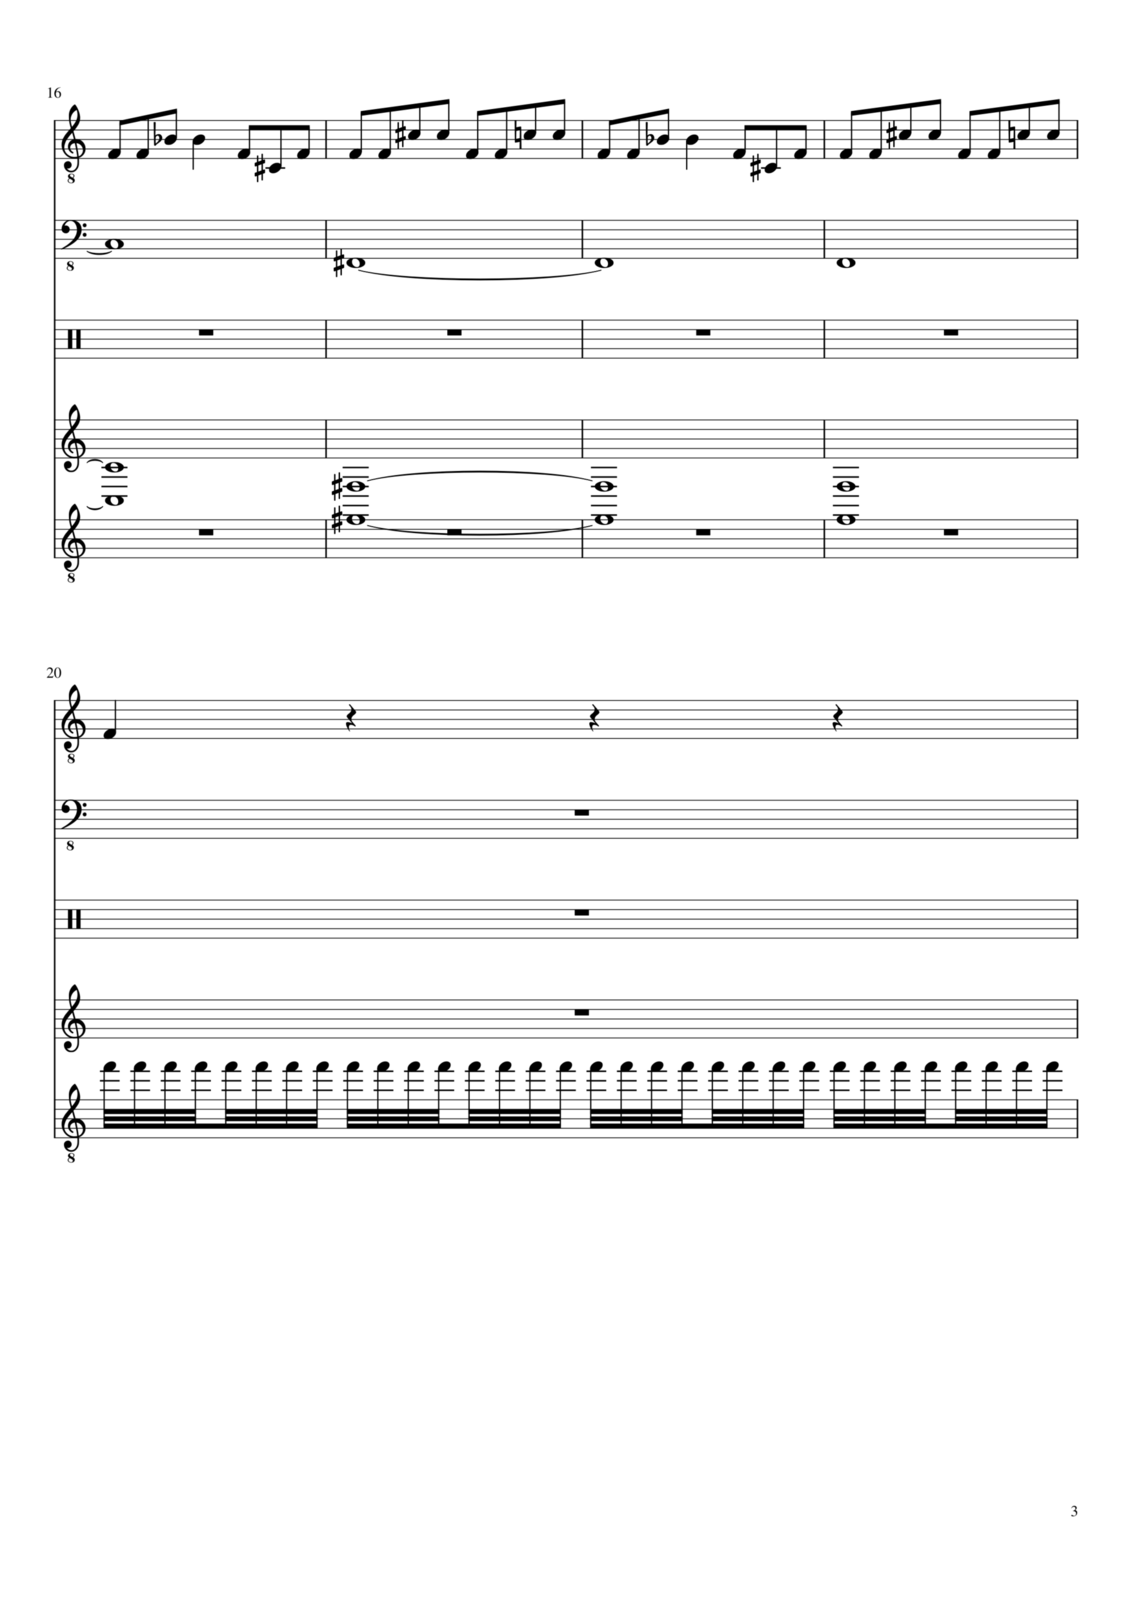 Vechnaya prizrachnaya vstrechnaya slide, Image 3